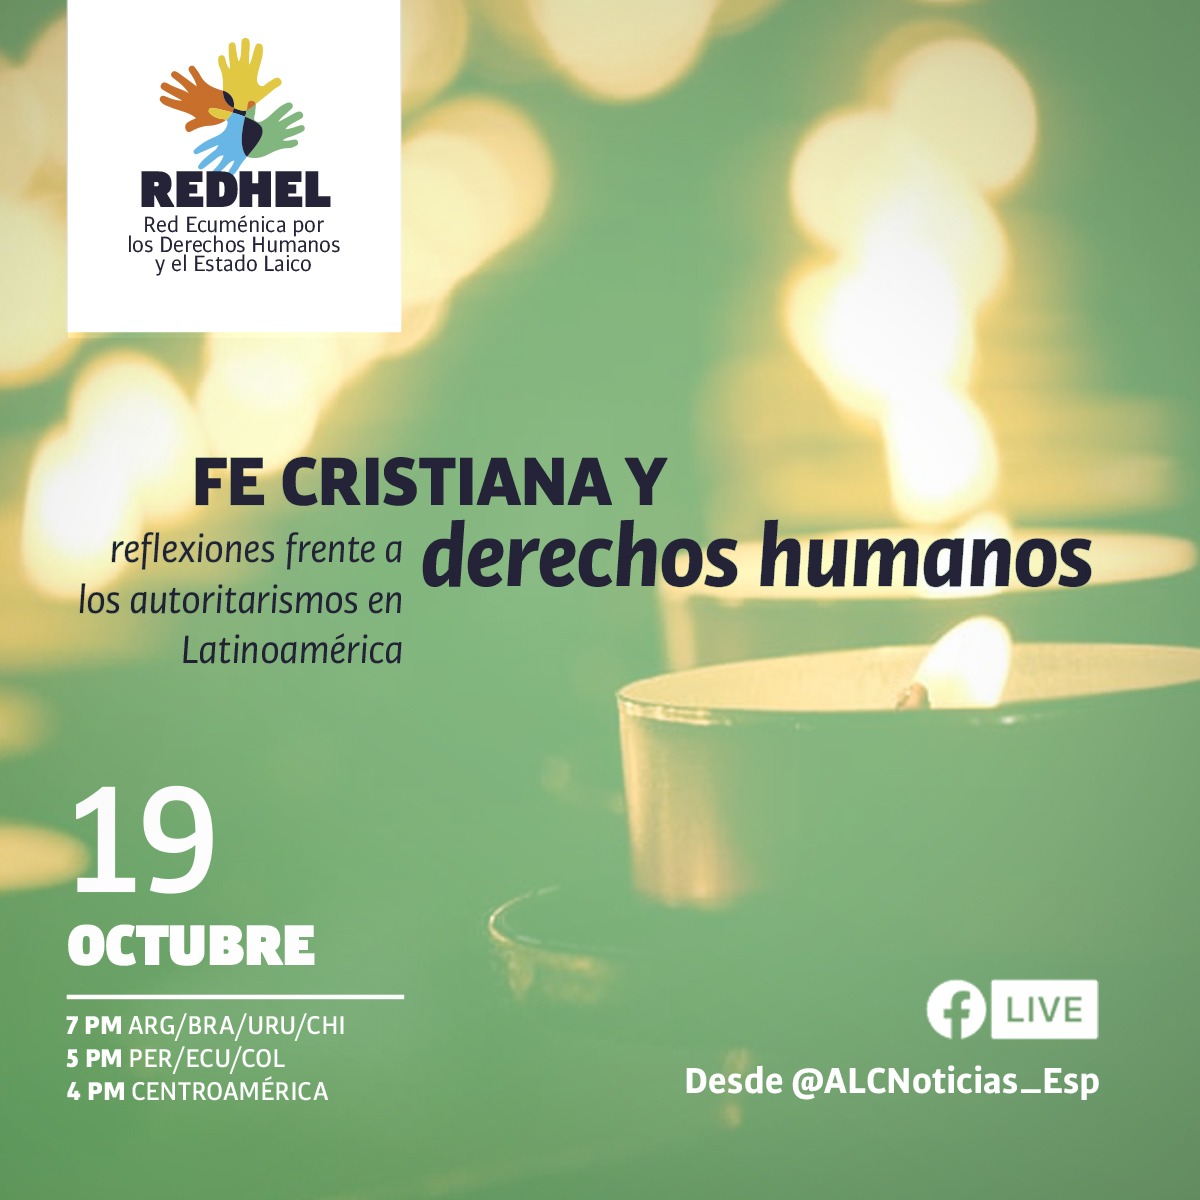 Fe cristiana y derechos humanos: reflexiones frente a los autoritarismos en Latinoamérica